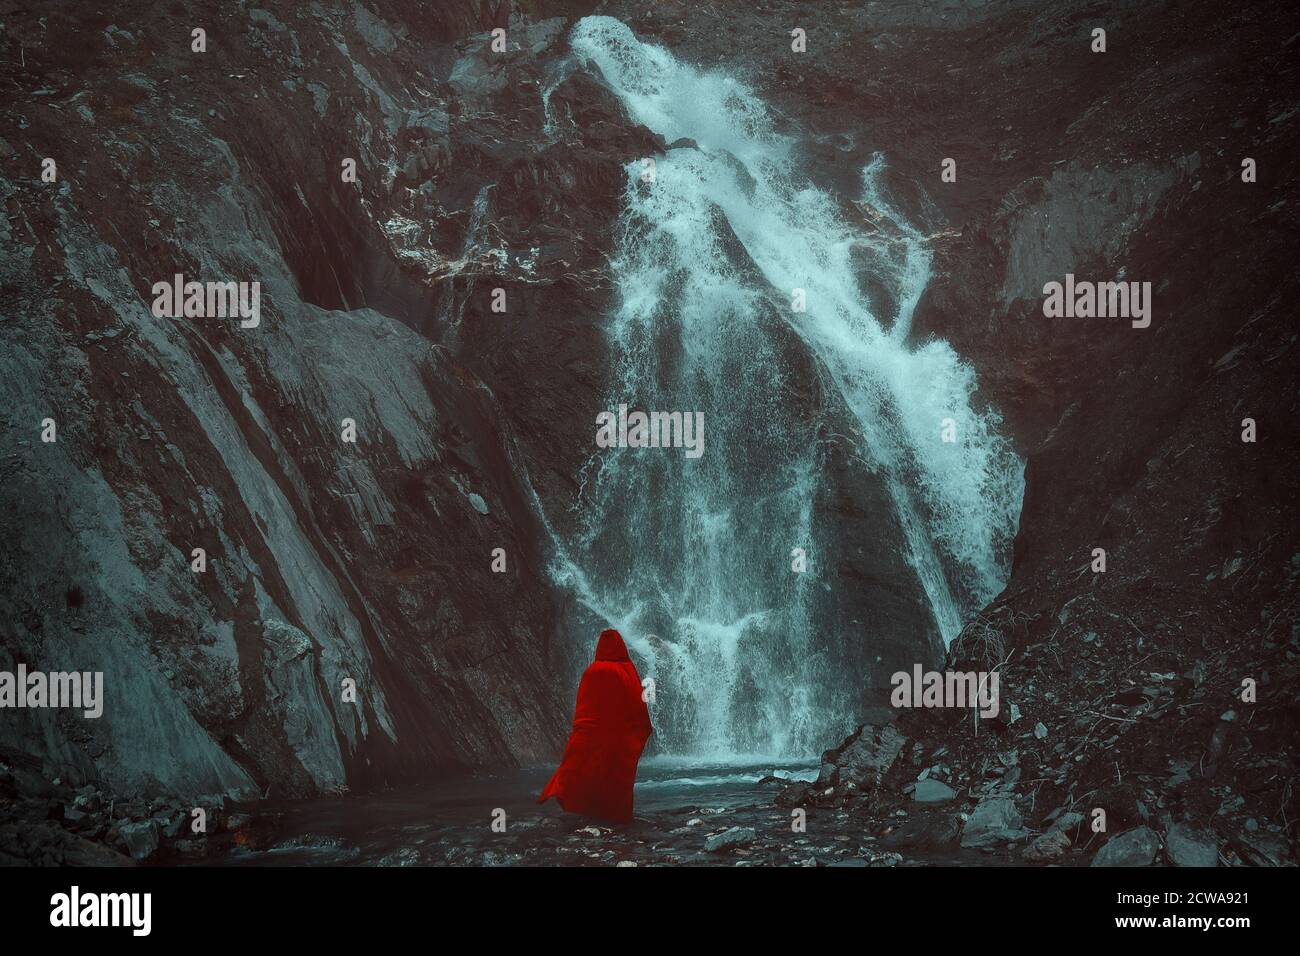 Rot getarnte Person, die einen mächtigen Wasserfall sieht Stockfoto